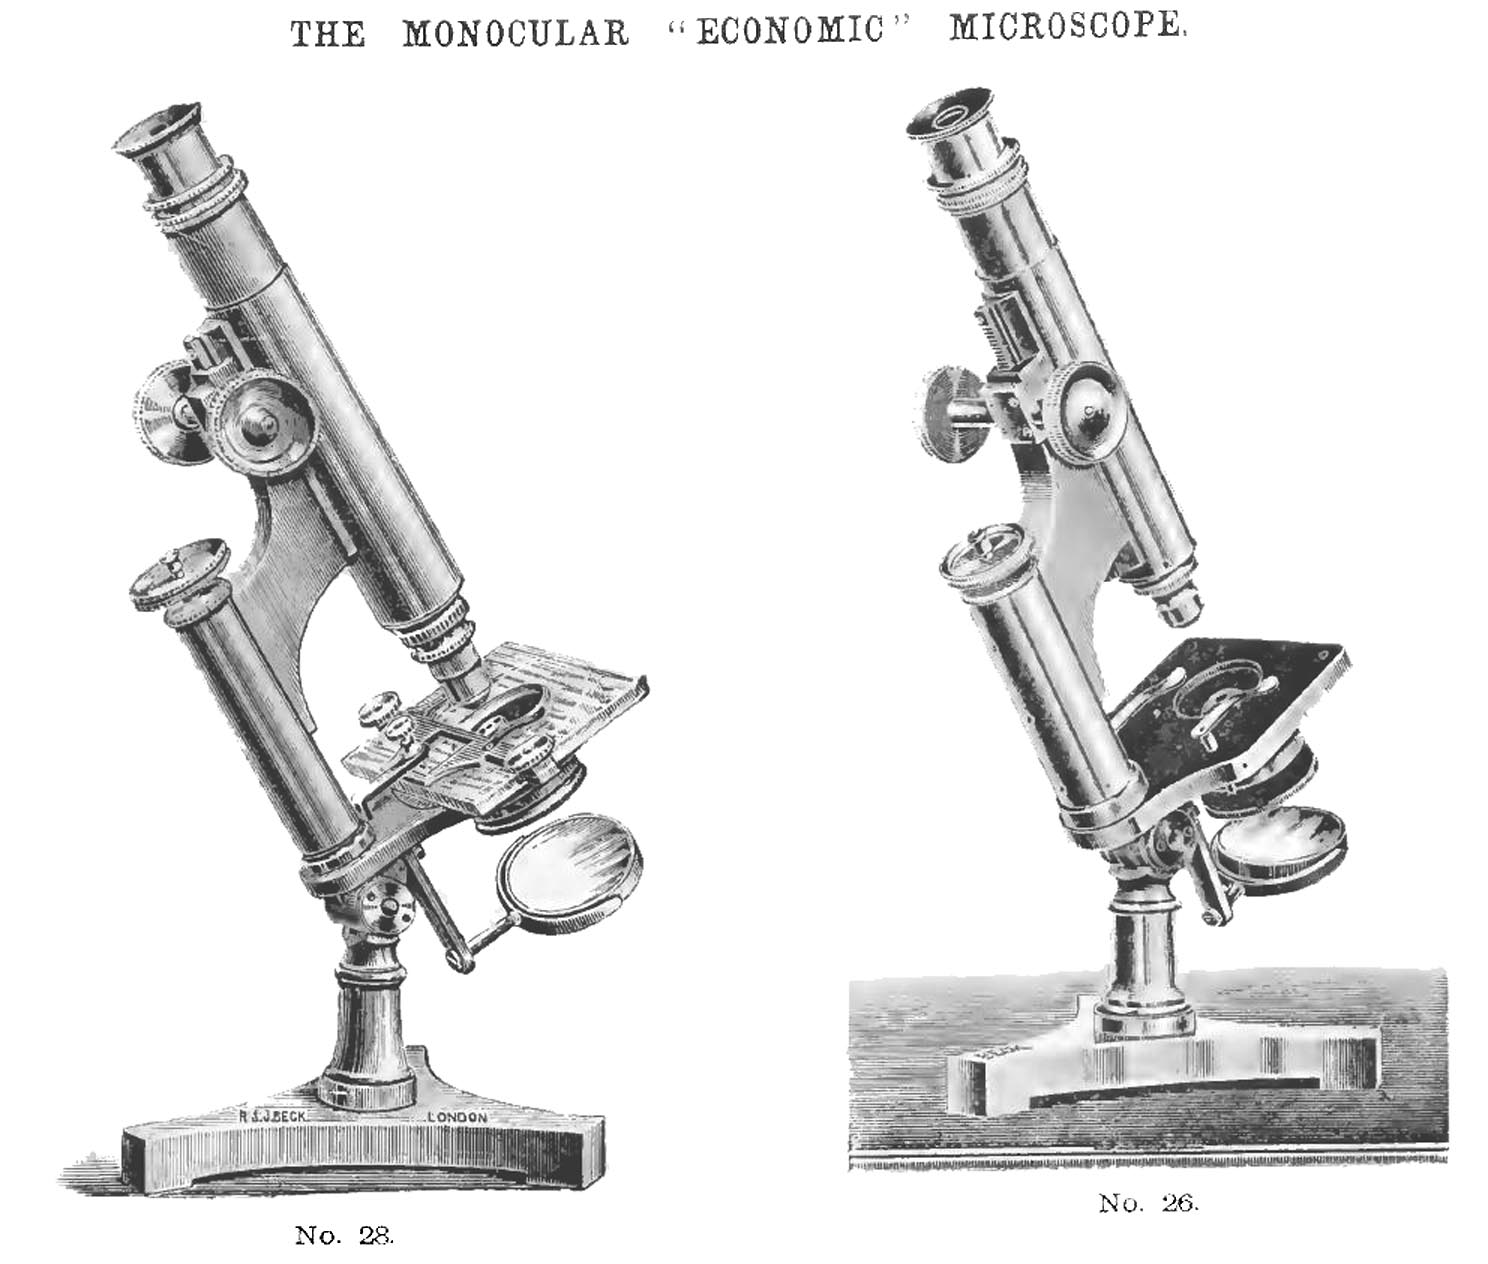 Beck Economic Microscope